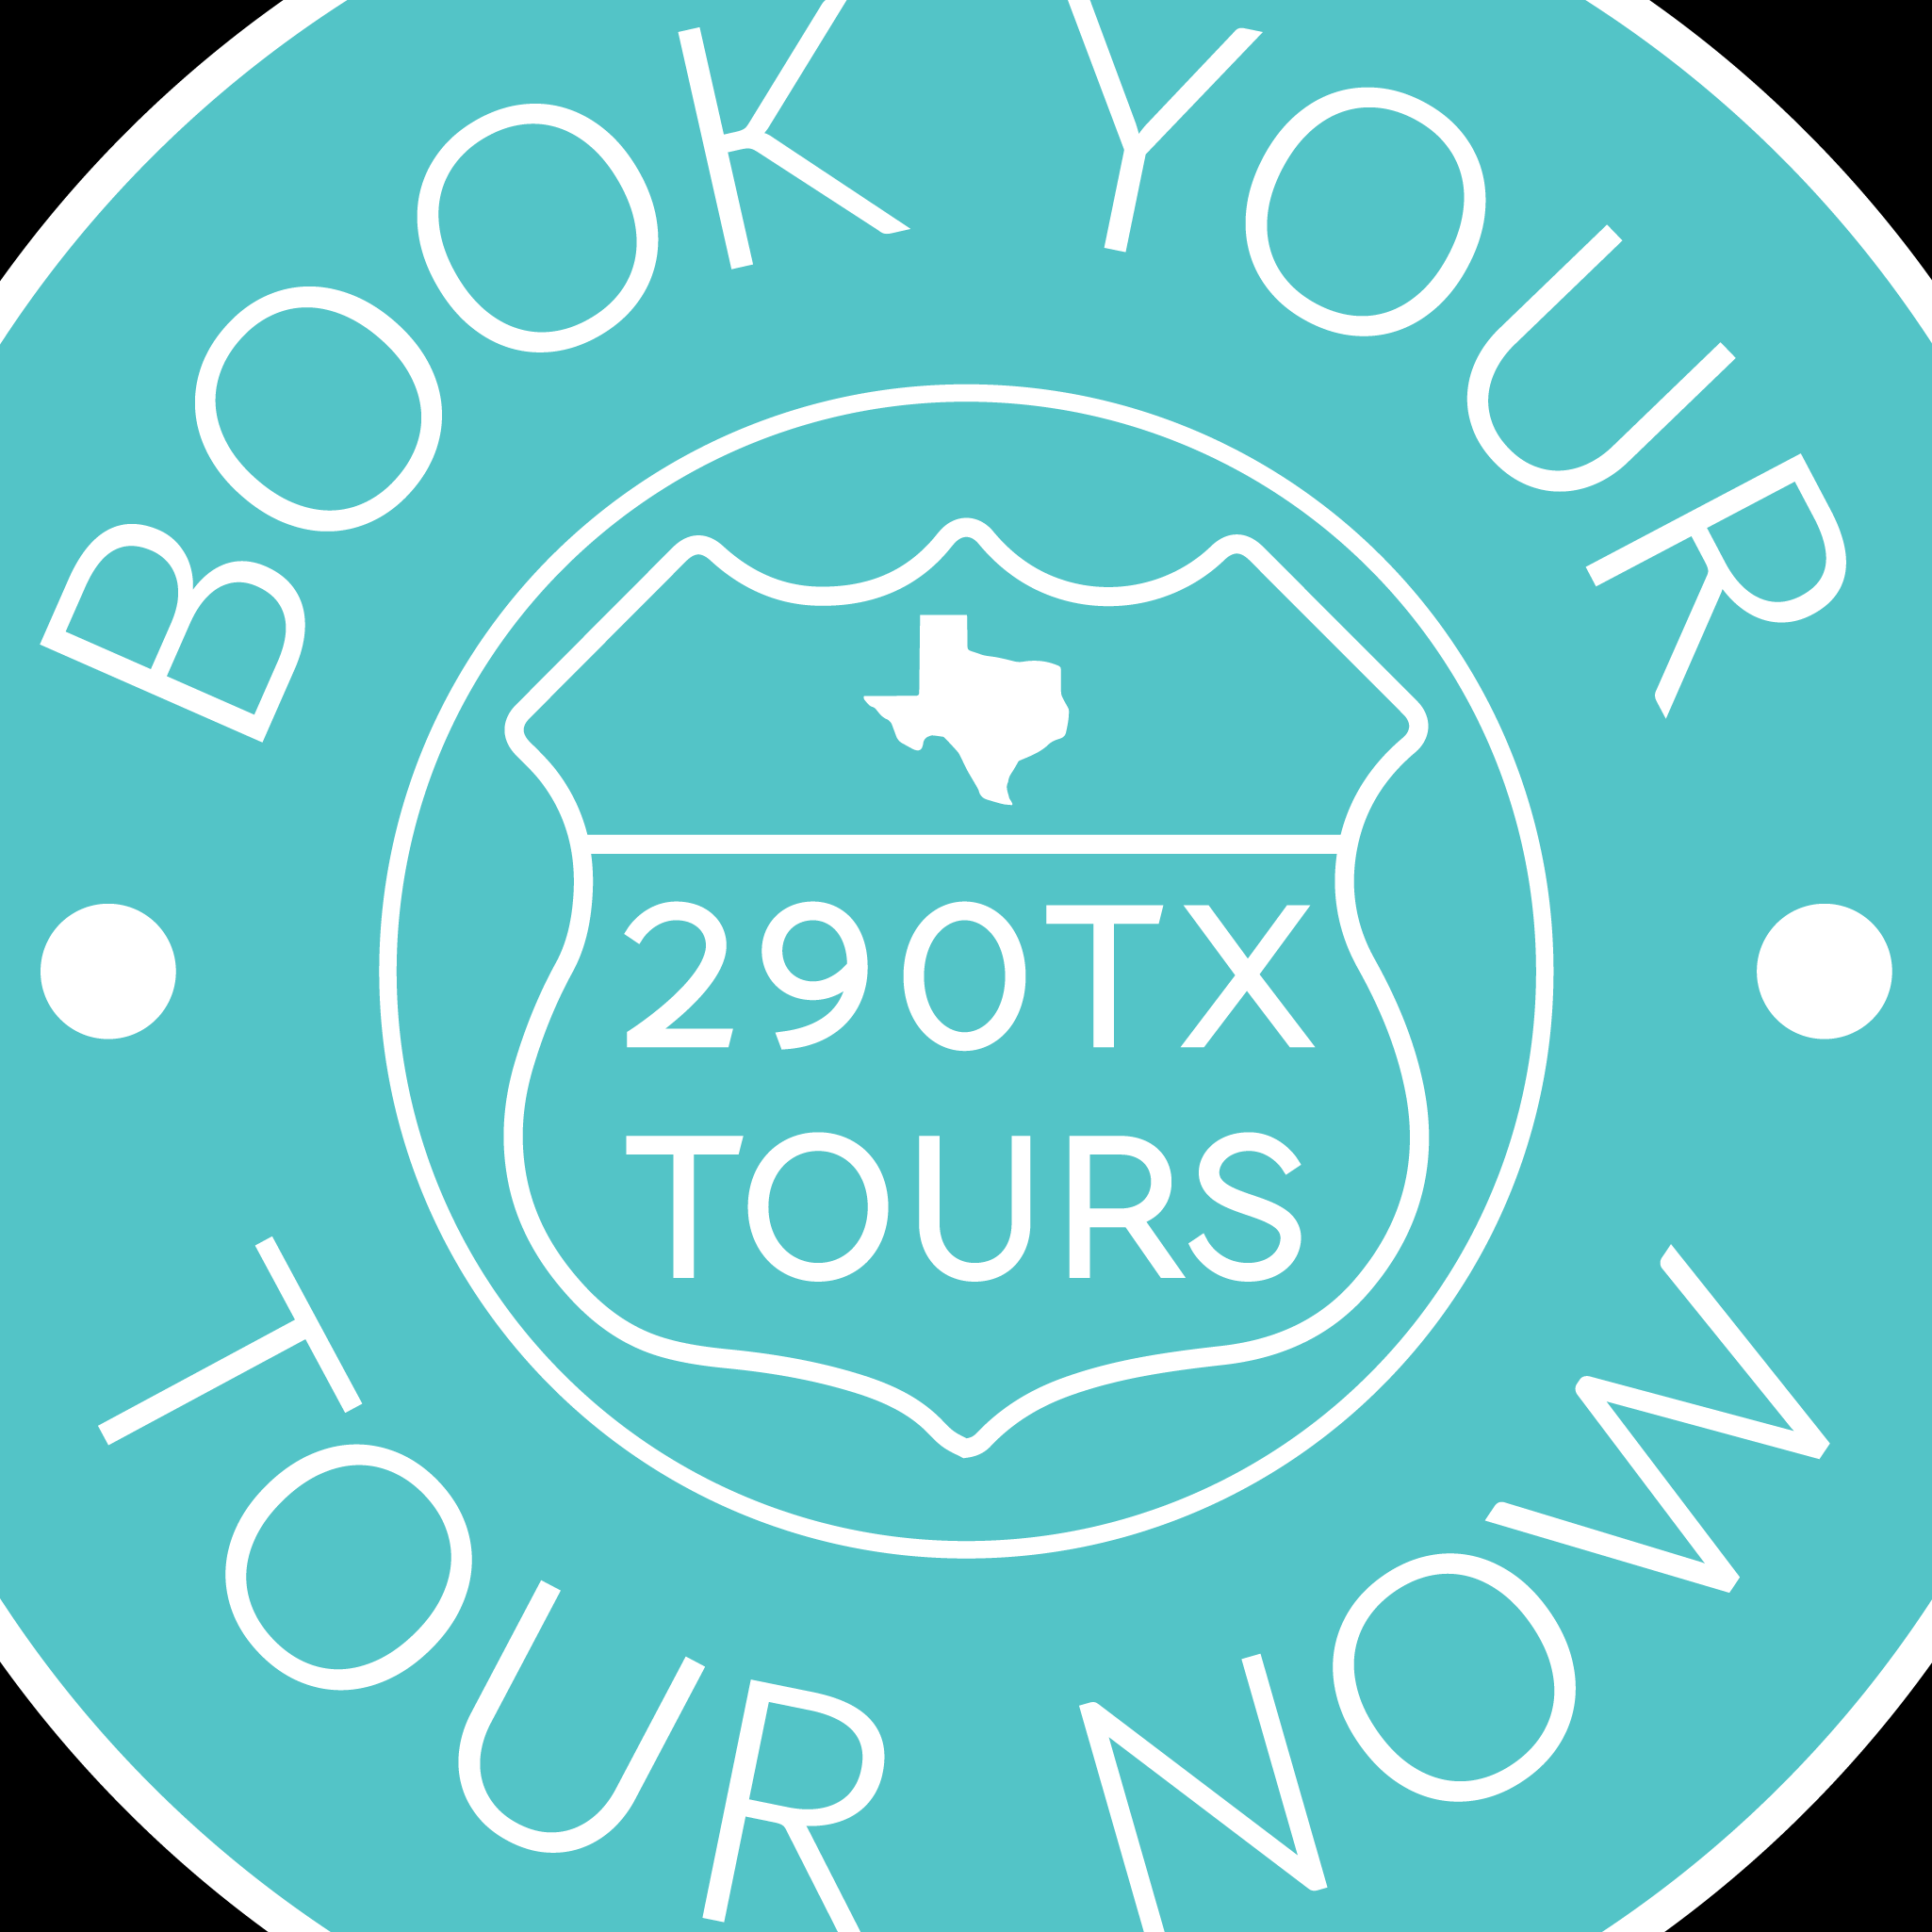 290tx Tours